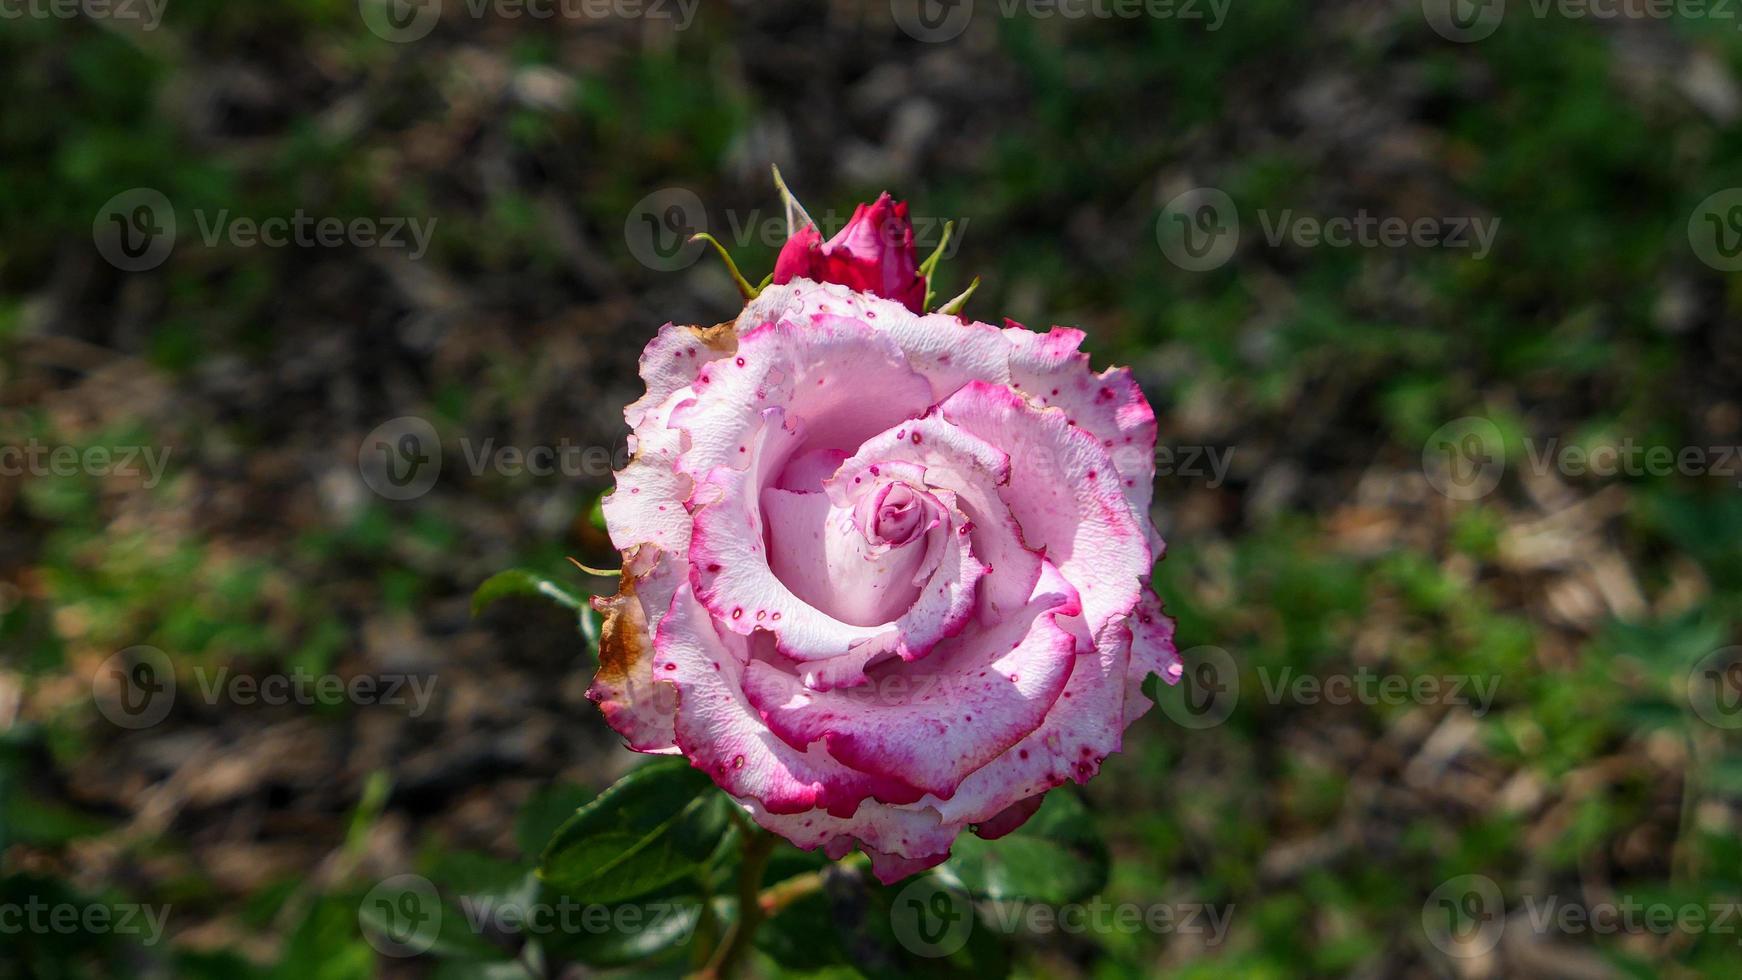 uma lindo rosa flores ao ar livre foto